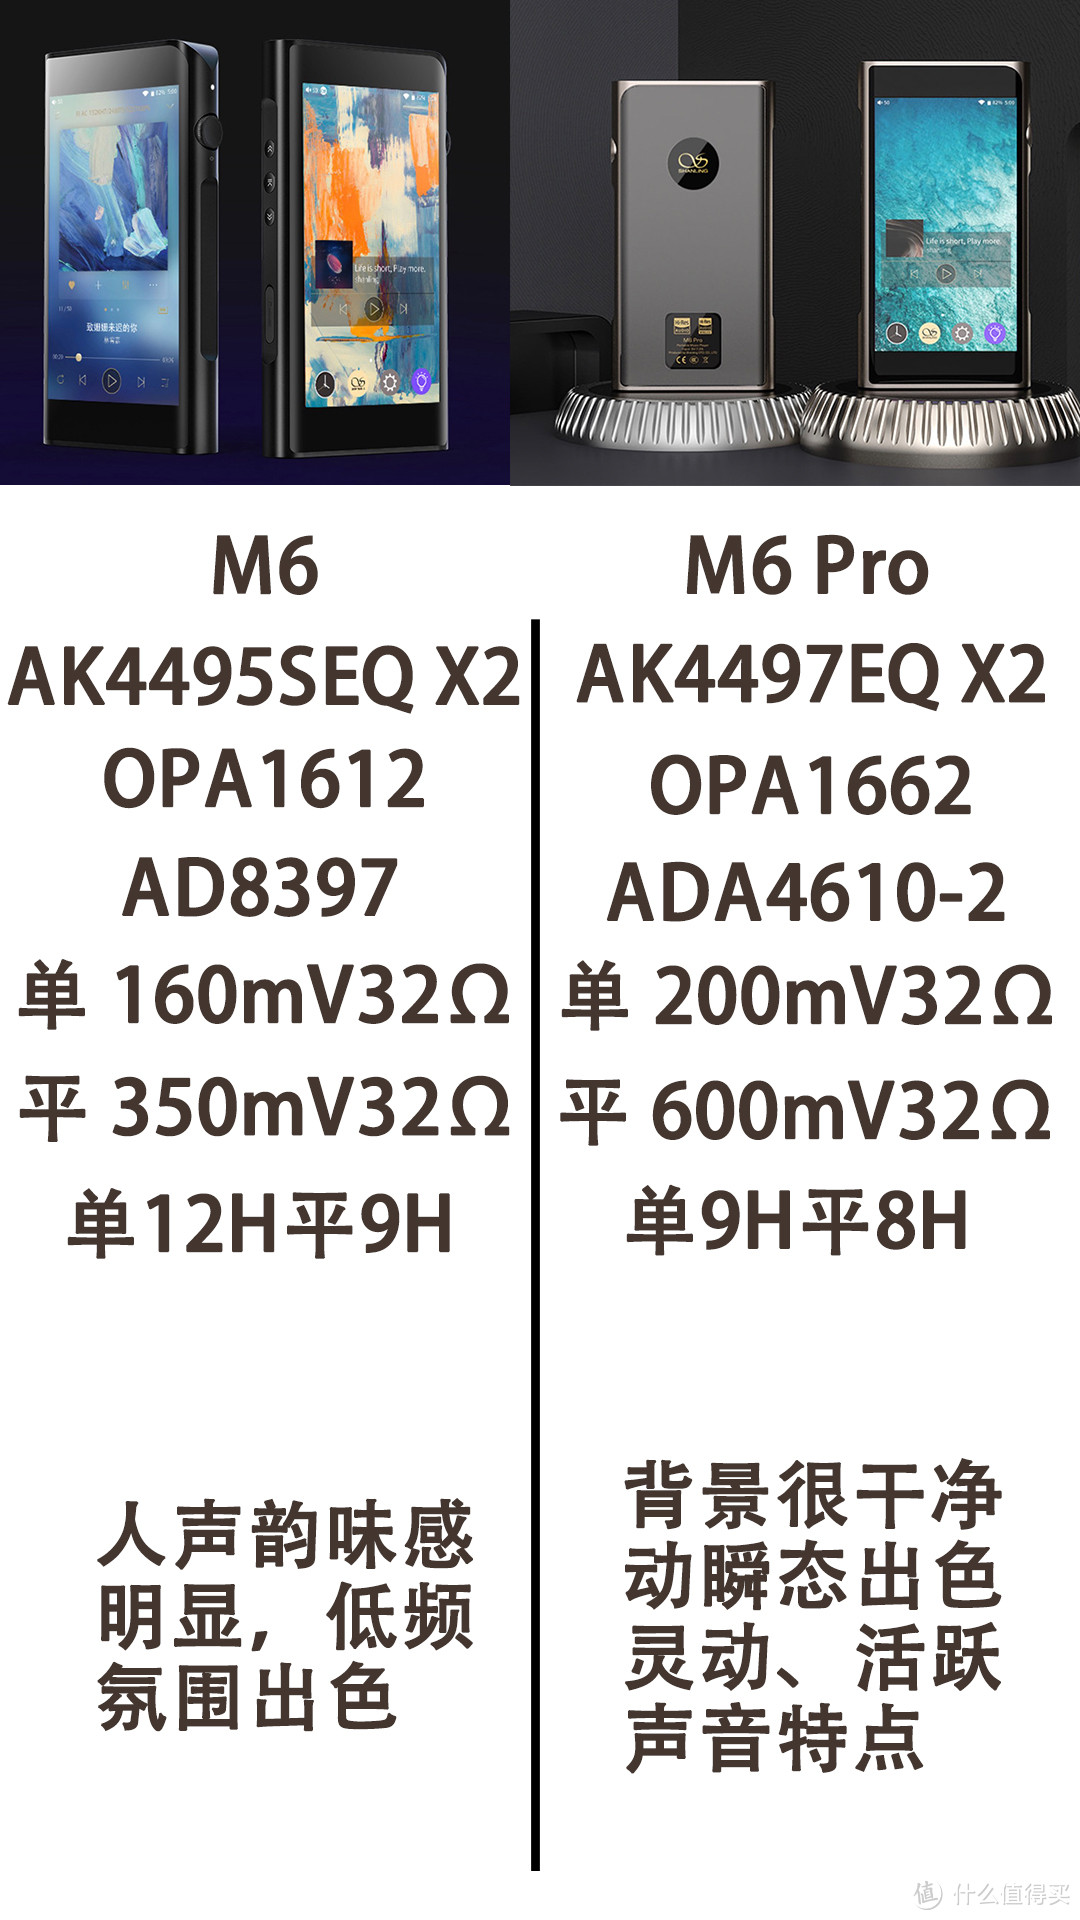 【撩你不敢怼 上】山灵M6和M6 Pro对比 相差2000元声音有何不同？